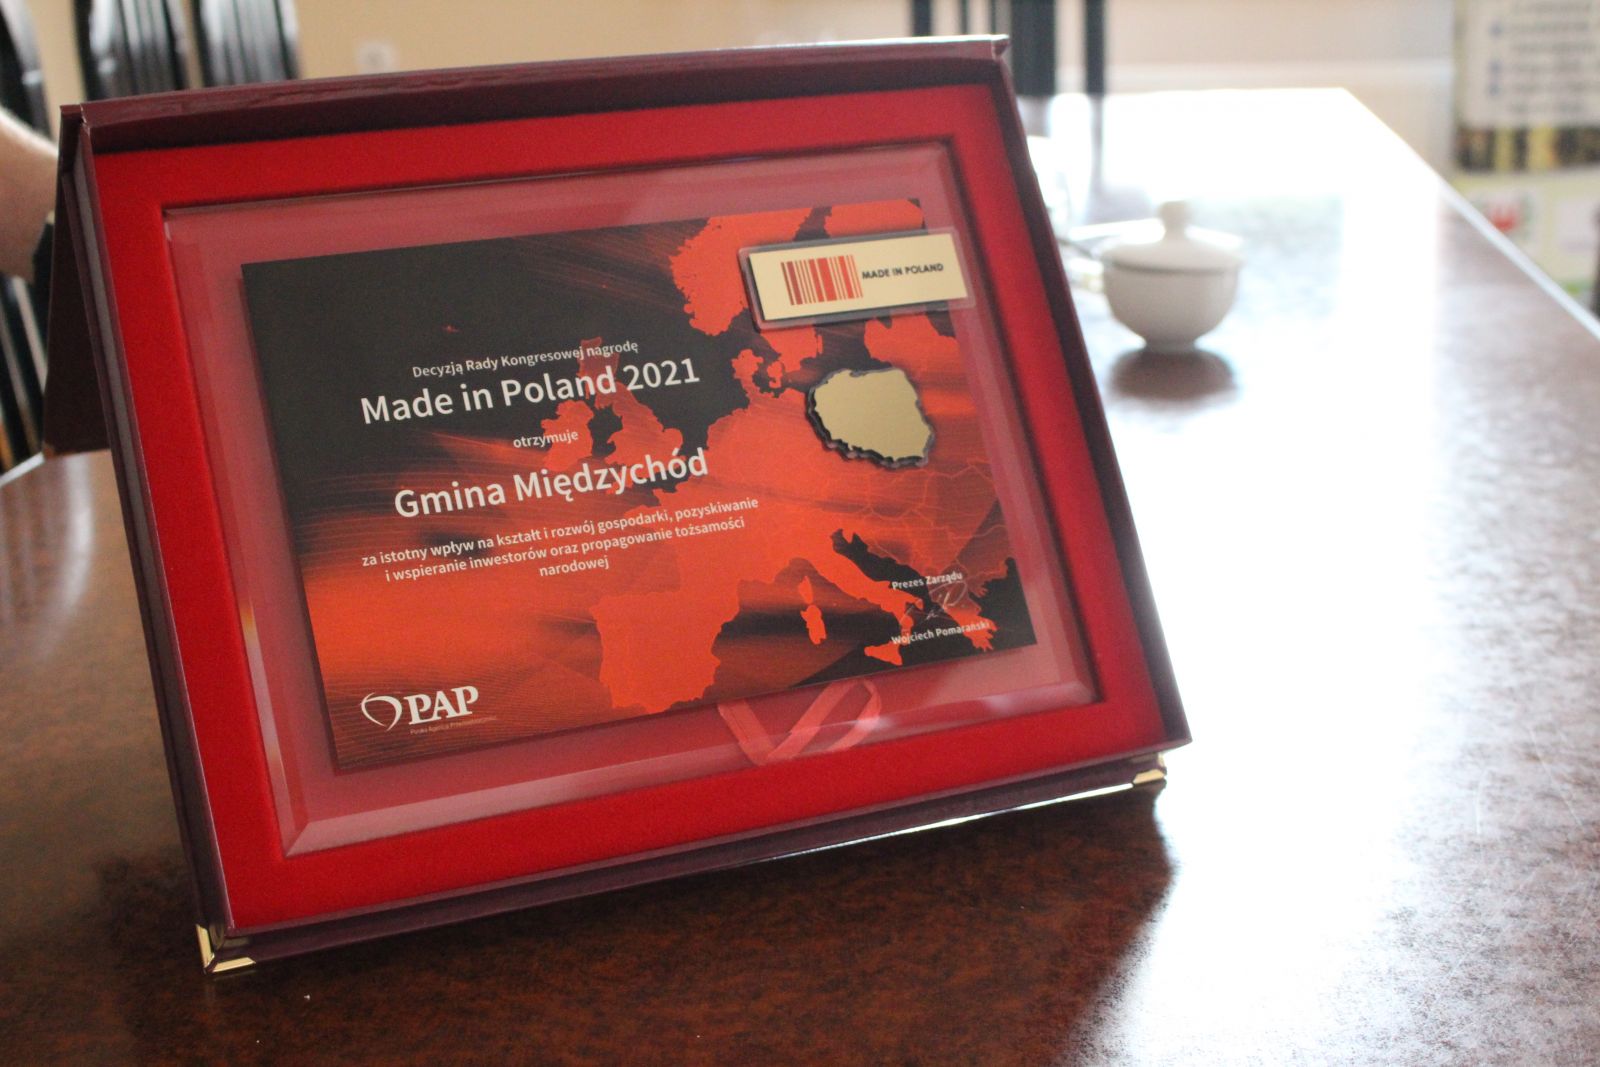 zdjęcie przedstawia nagrodę z Made in Poland